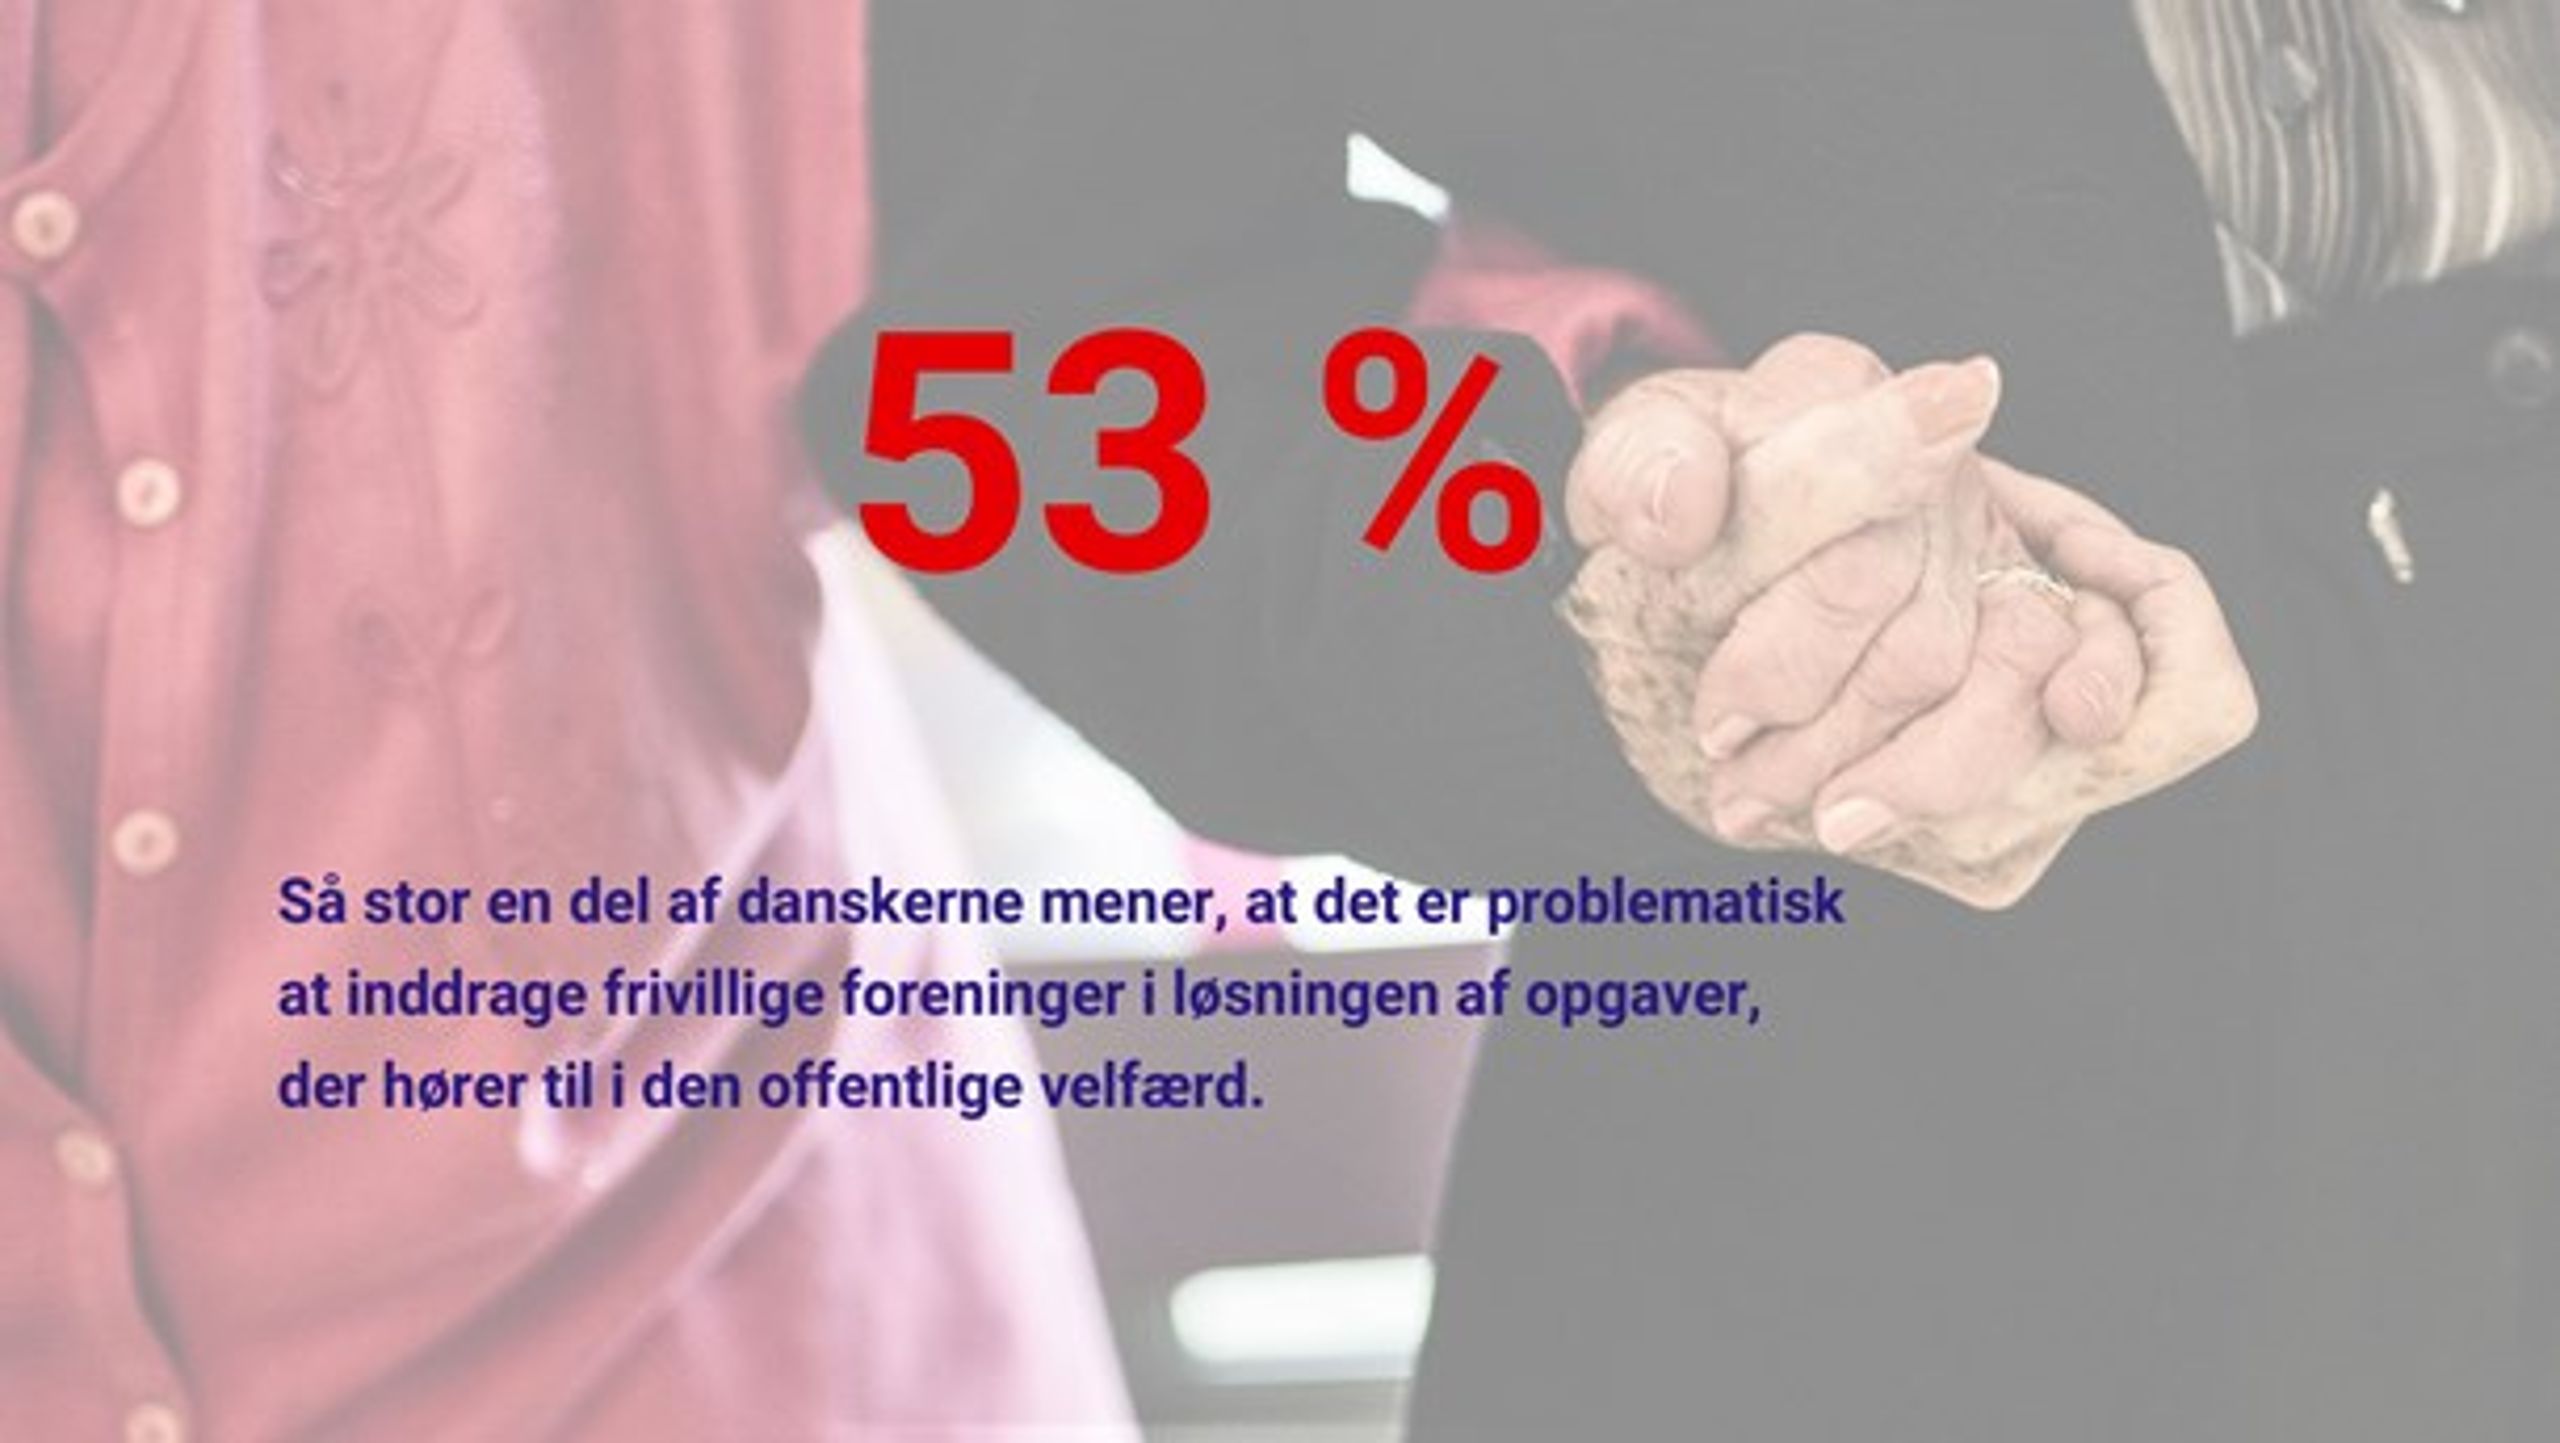 Kilde: Norstat for Altinget og Jyllands-Posten, november 2018.